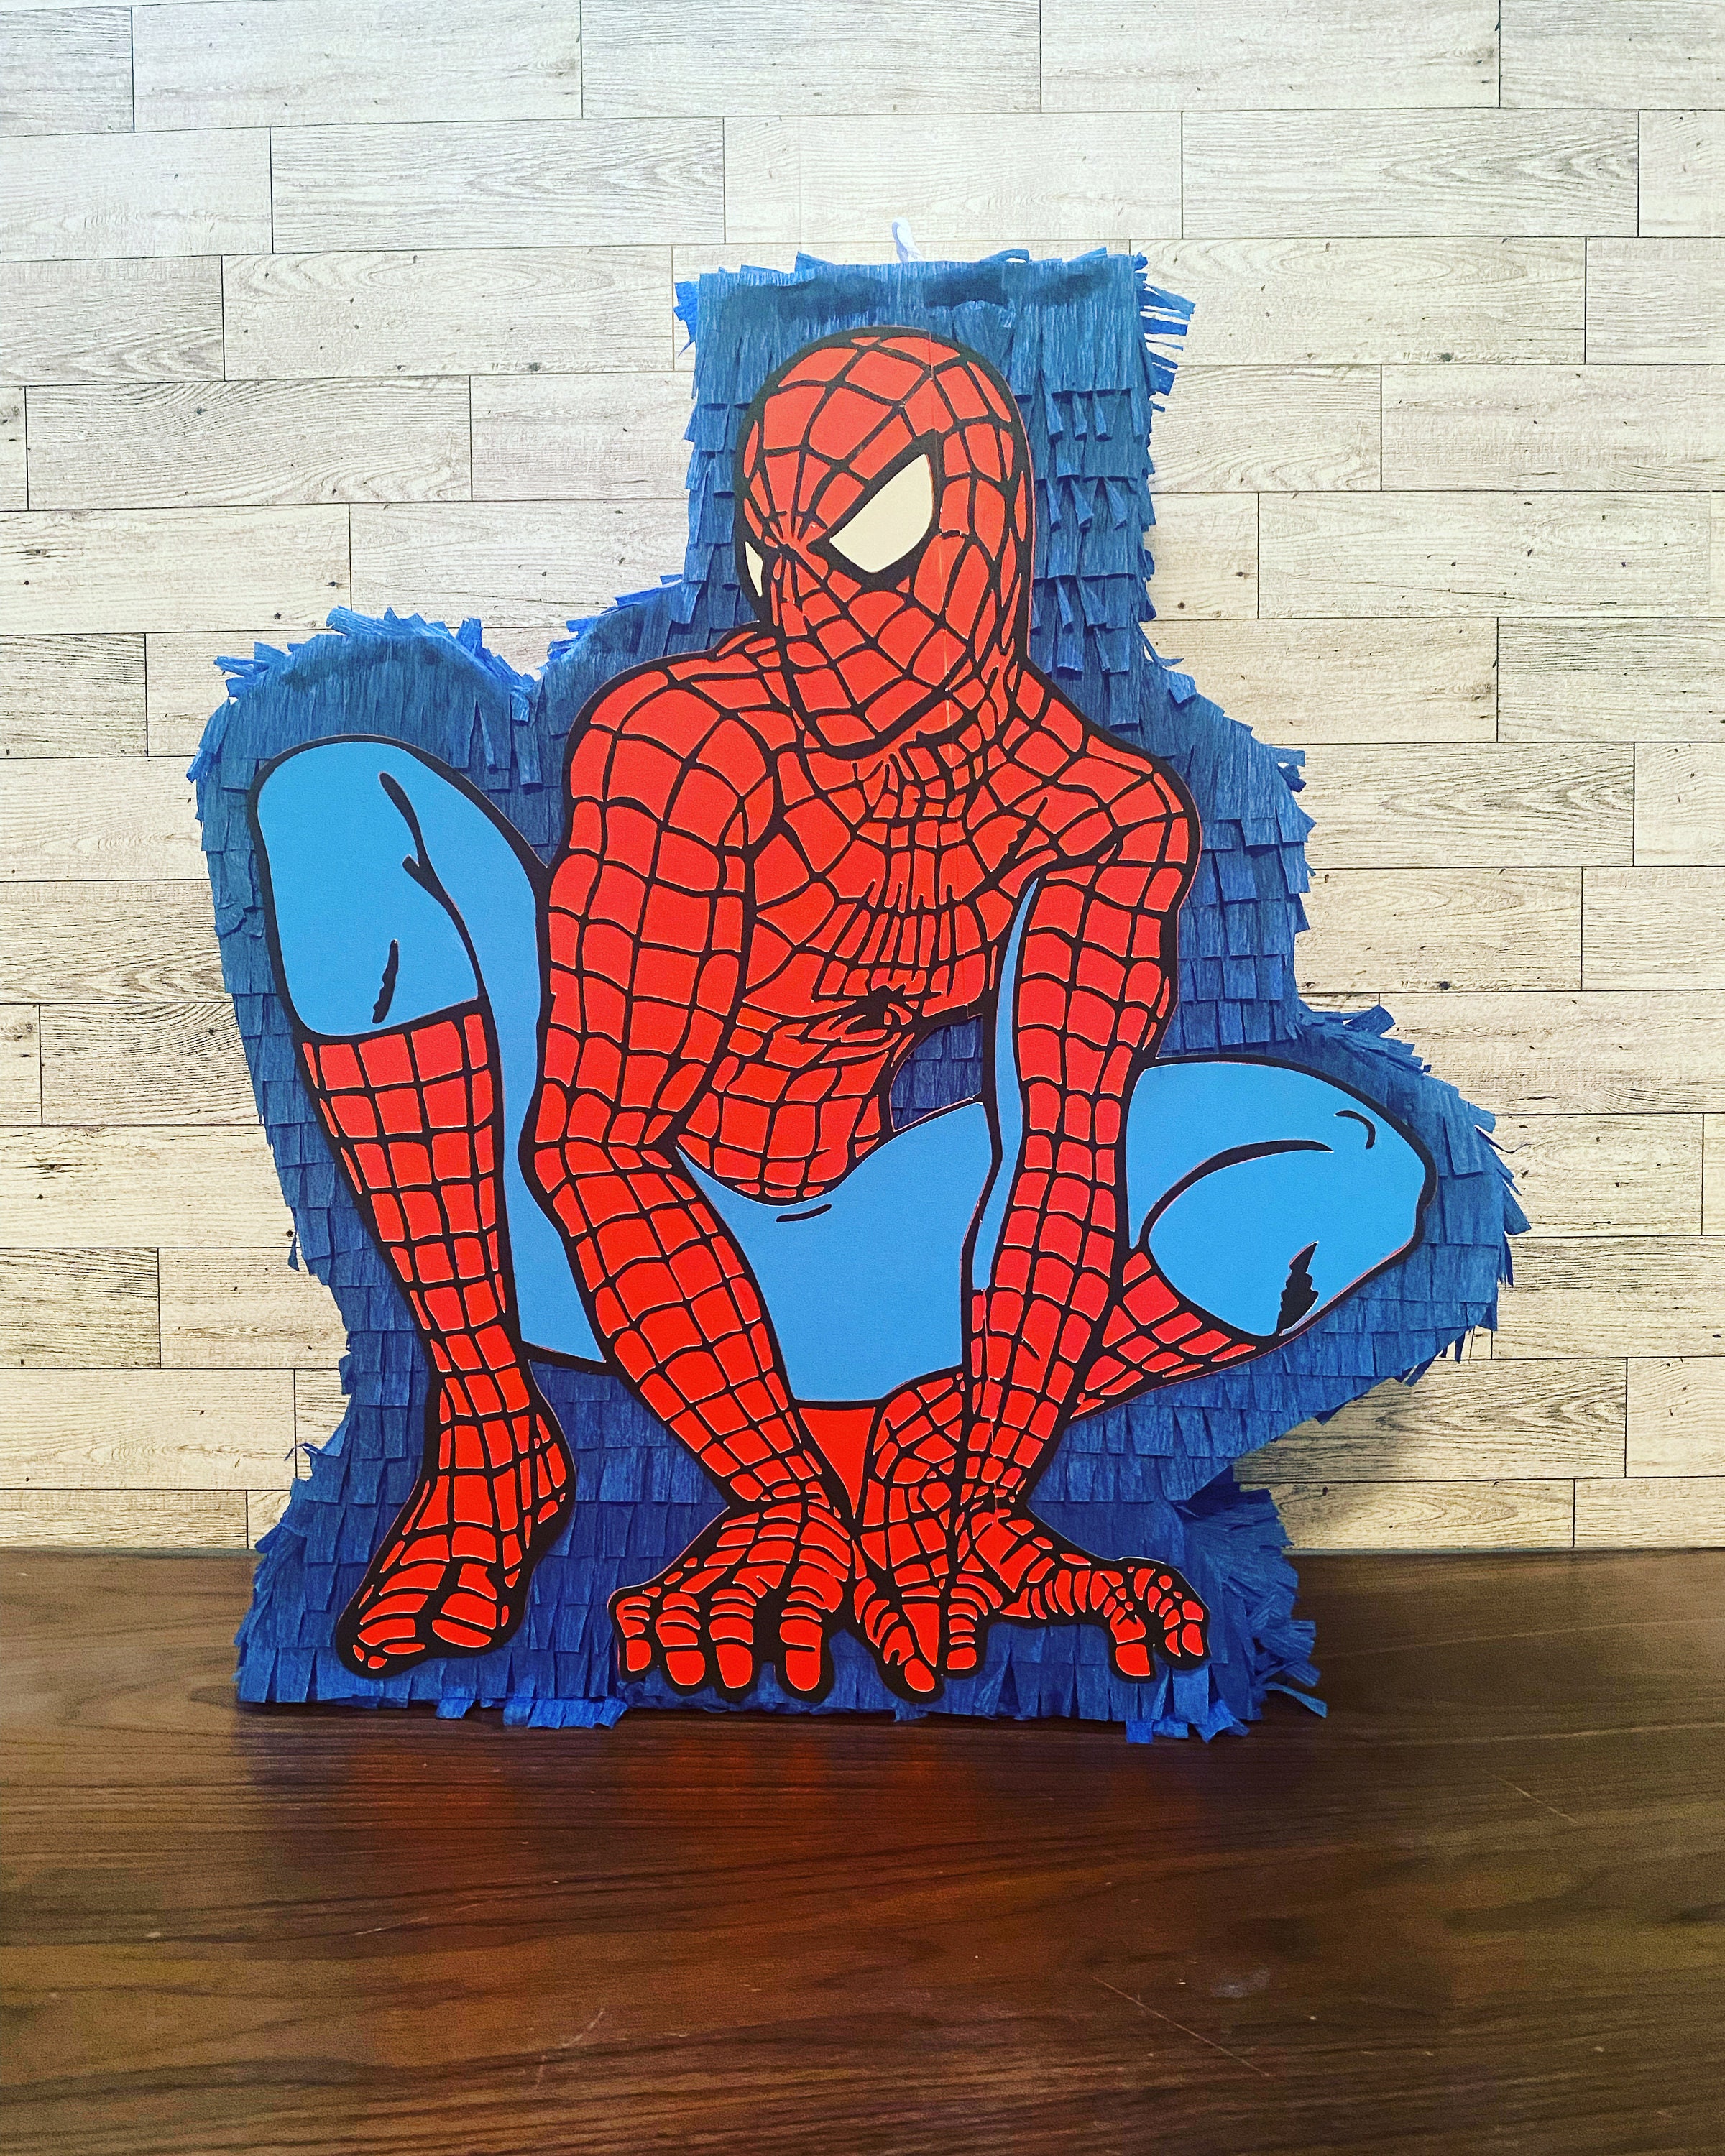 Piñata Spiderman III - Comprar en oh la piñata